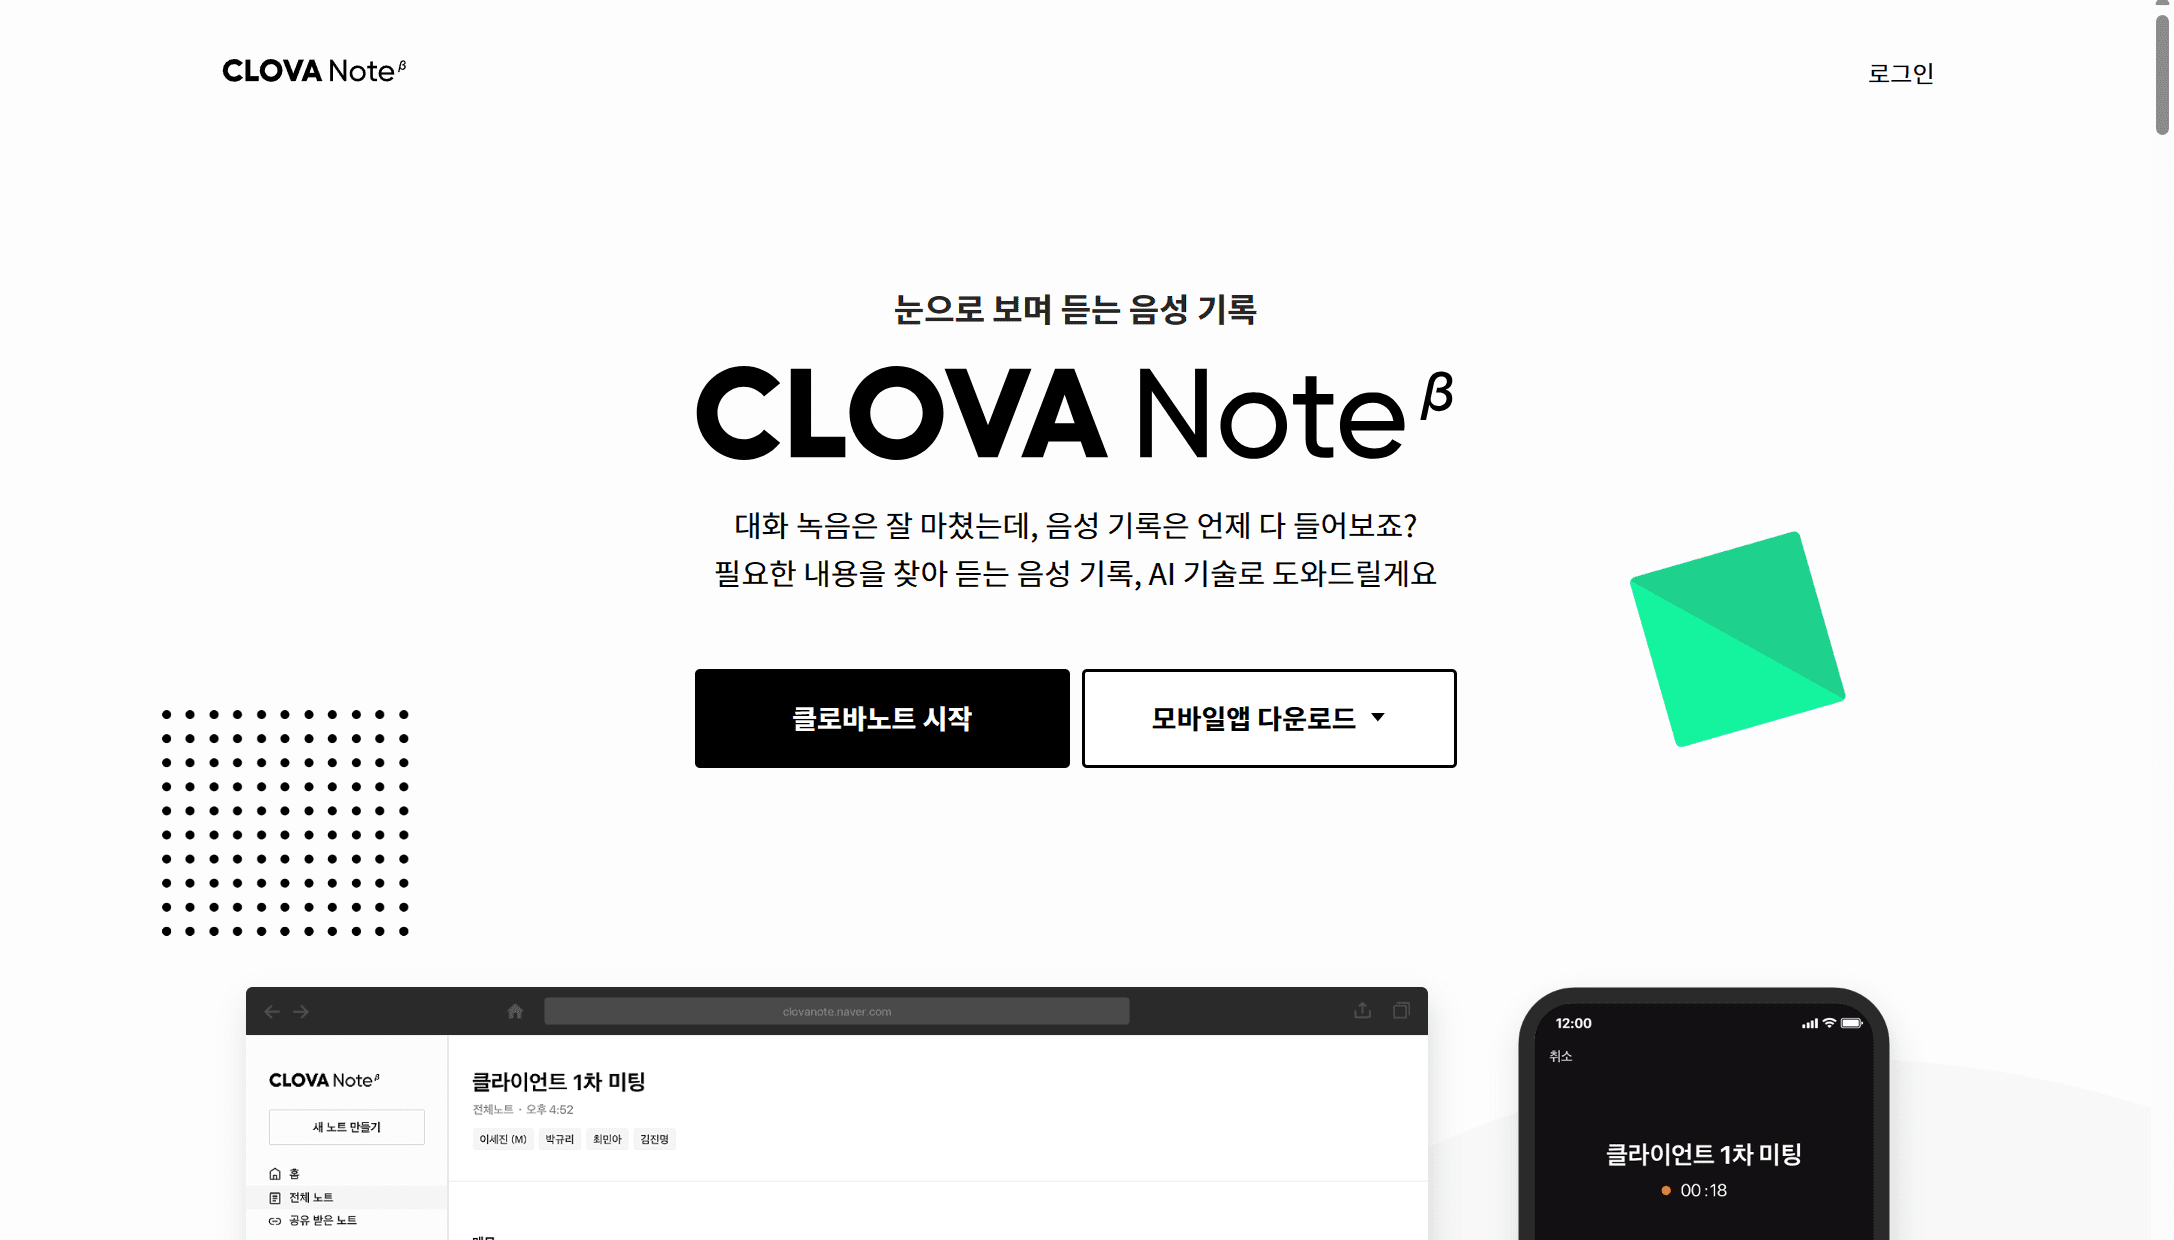 O Clova Note é uma poderosa ferramenta de transcrição de reuniões coreanas